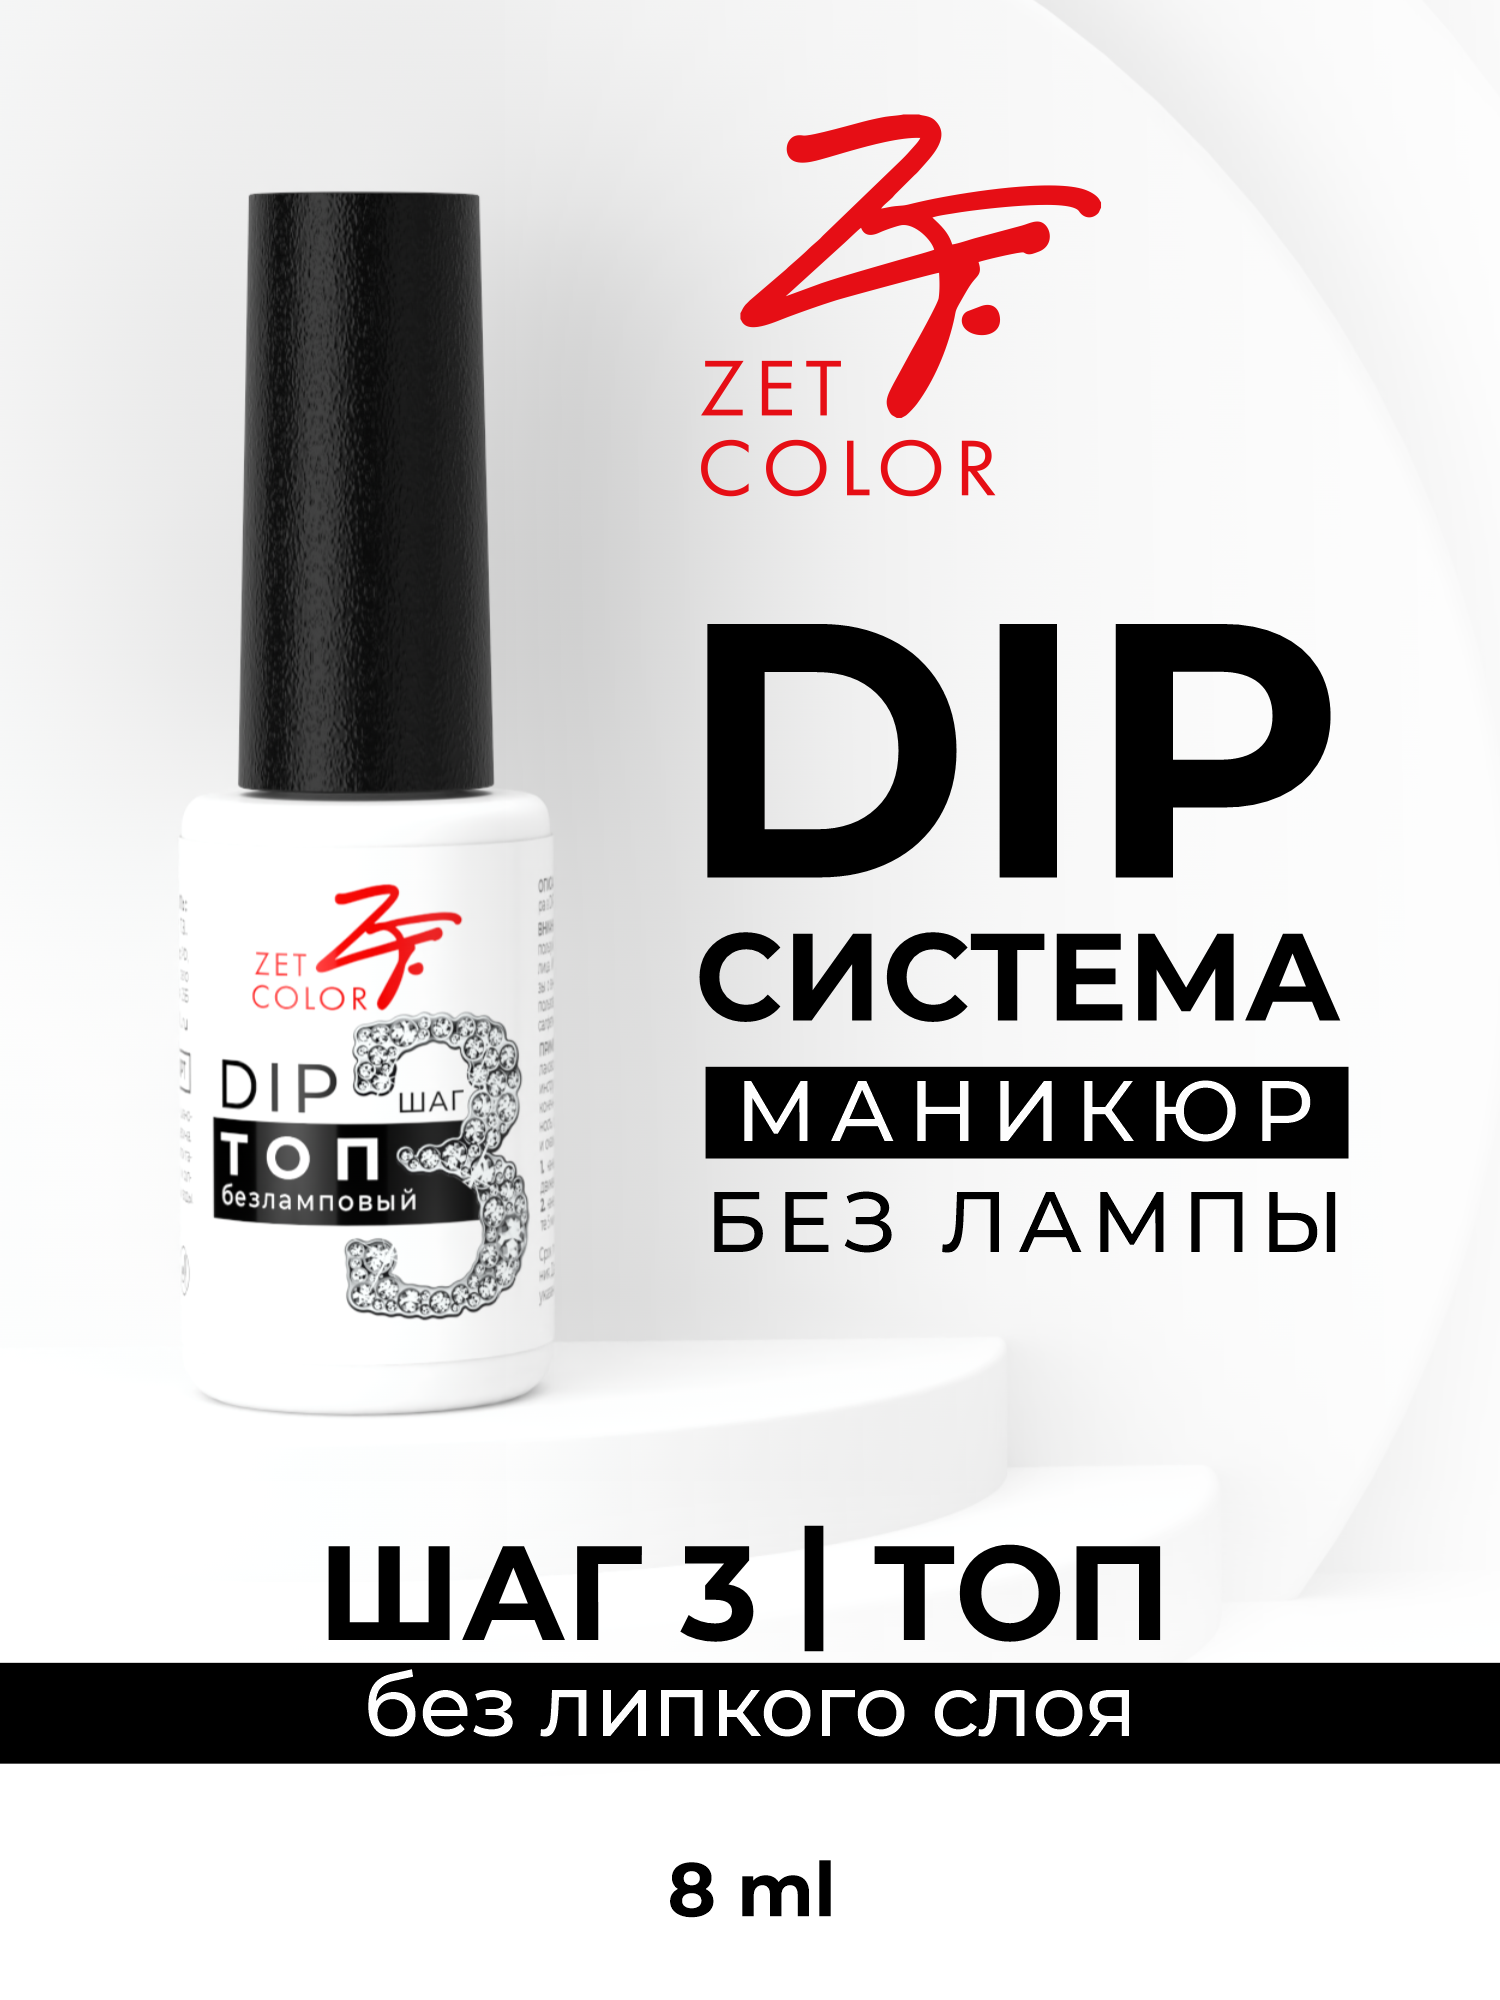 DIP ТОП Zet Color безламповый шаг 3 активатор activator iq color tone 1 7% dewal cosmetics